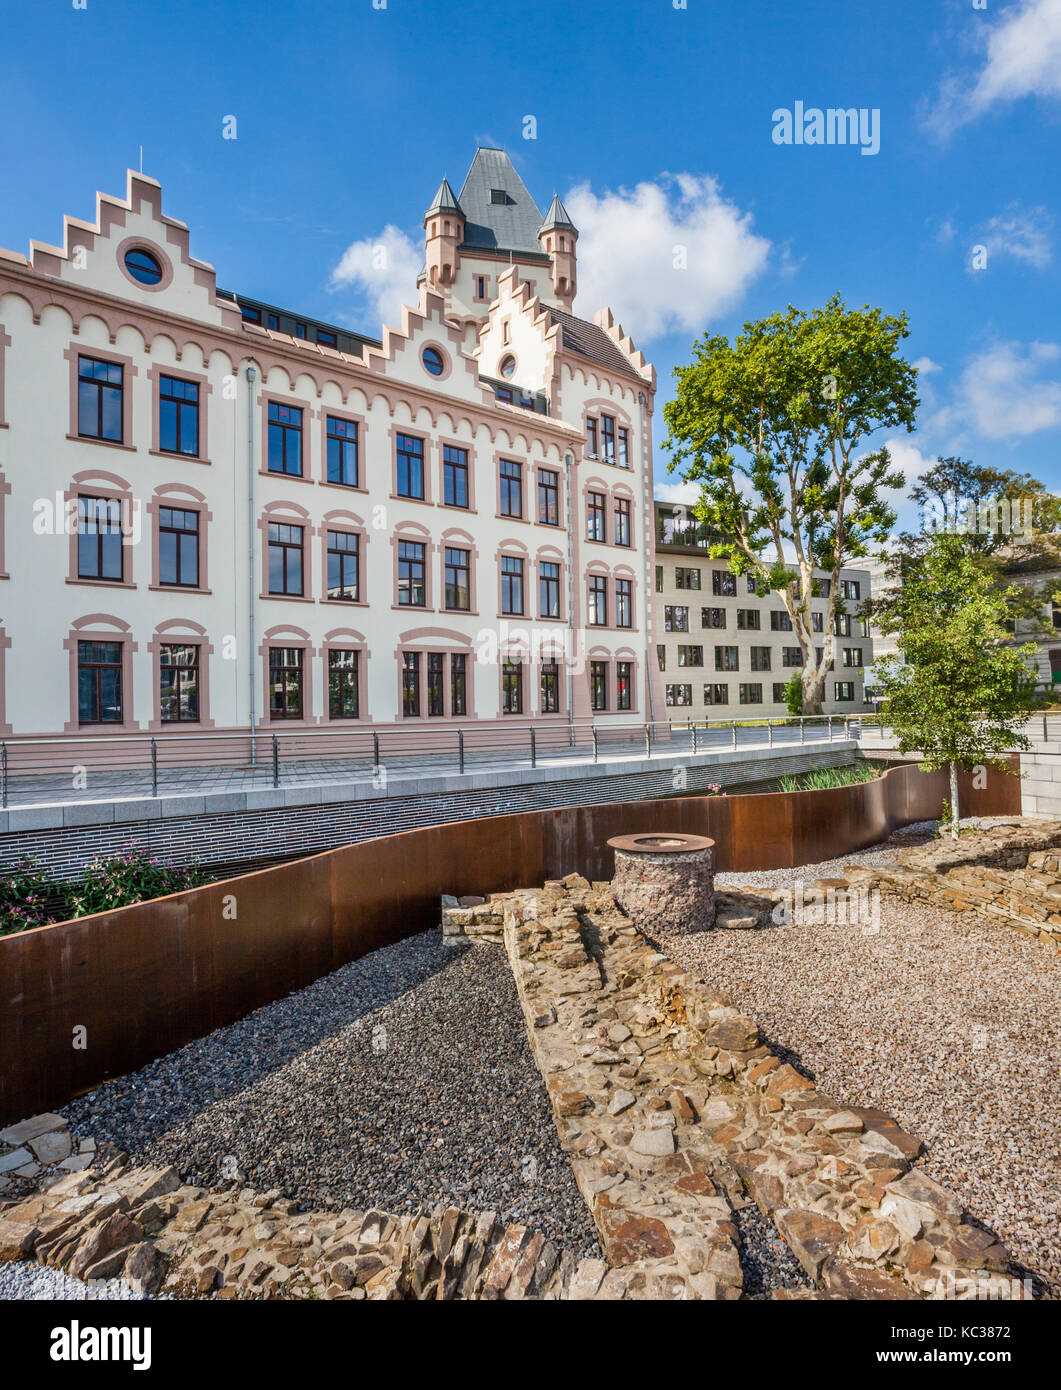 In Germania, in Renania settentrionale-Vestfalia, Dortmund-Hörde, vista del Castello - Hoerde con l'Orda brook con excaved vecchio castello fondazioni Foto Stock